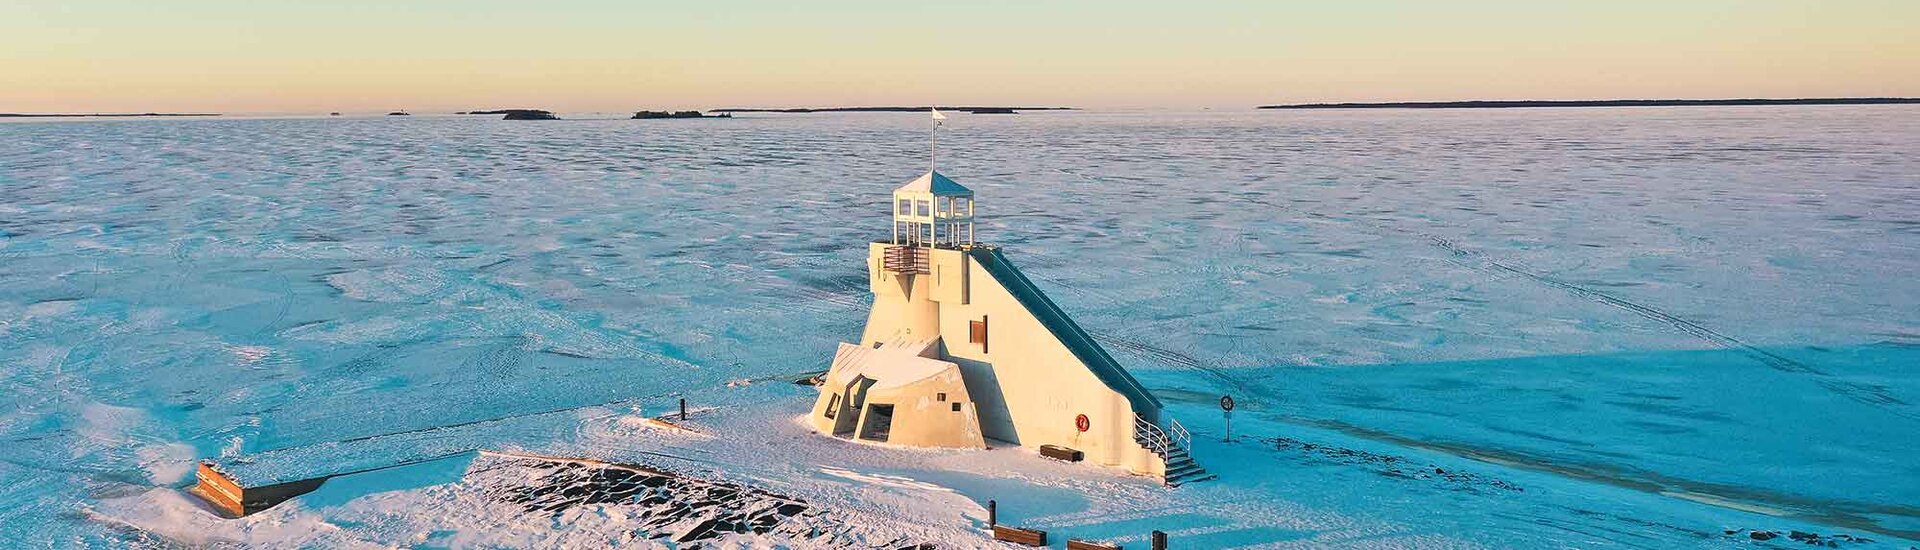 Leuchtturm am bottnischen Meerbusen in Finnland